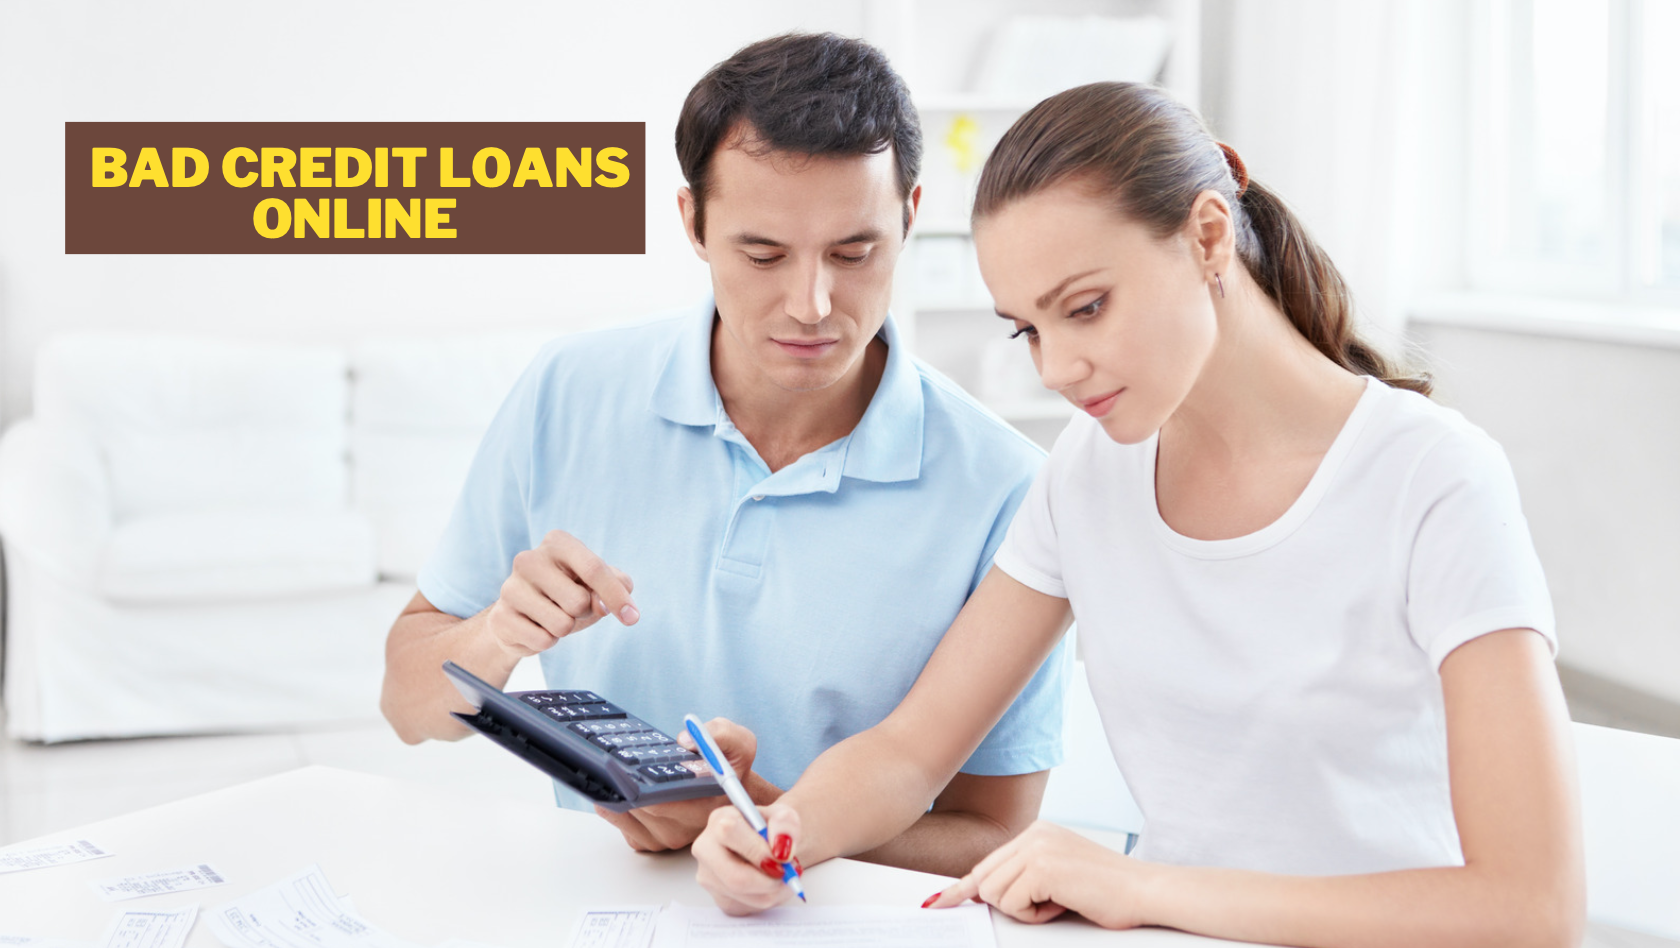 Prestiti Bad Credit Online - Come ottenere l'approvazione online